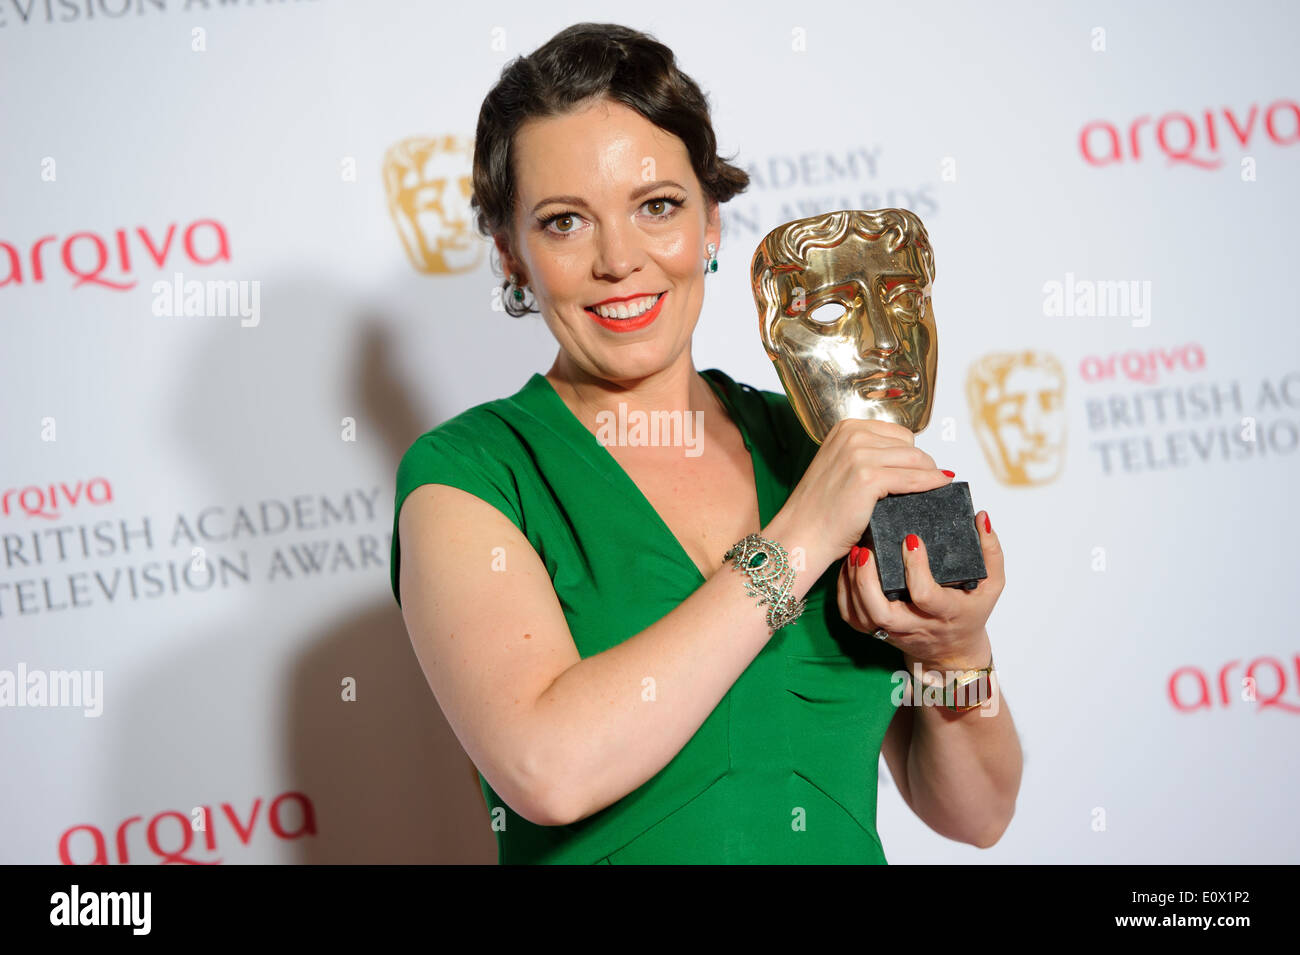 Olivia Colman posiert für Fotografen im Raum bei den British Academy Television Awards Gewinner. Stockfoto